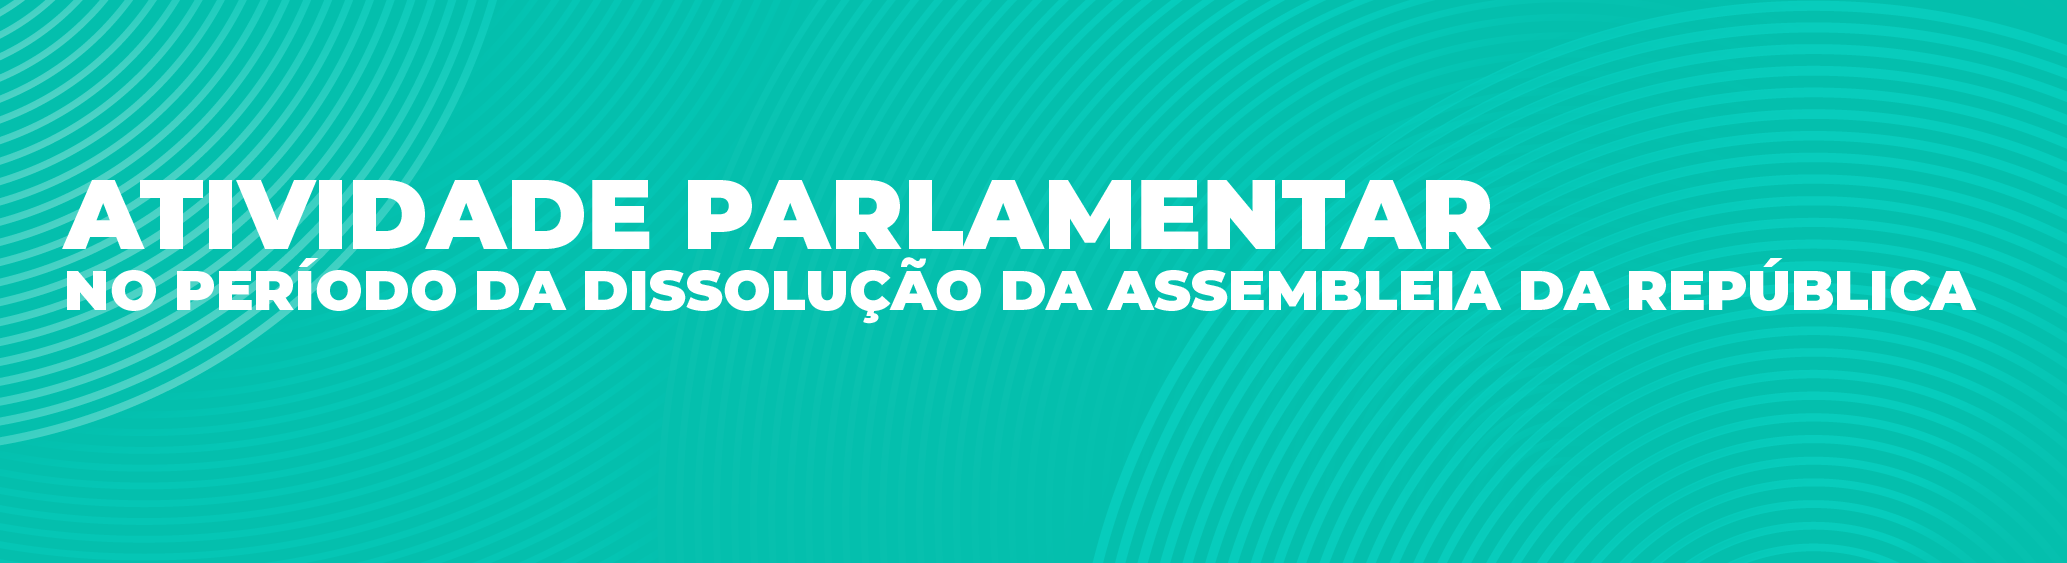 Banner Atividade Parlamentar Período dissolução da Assembleia da República